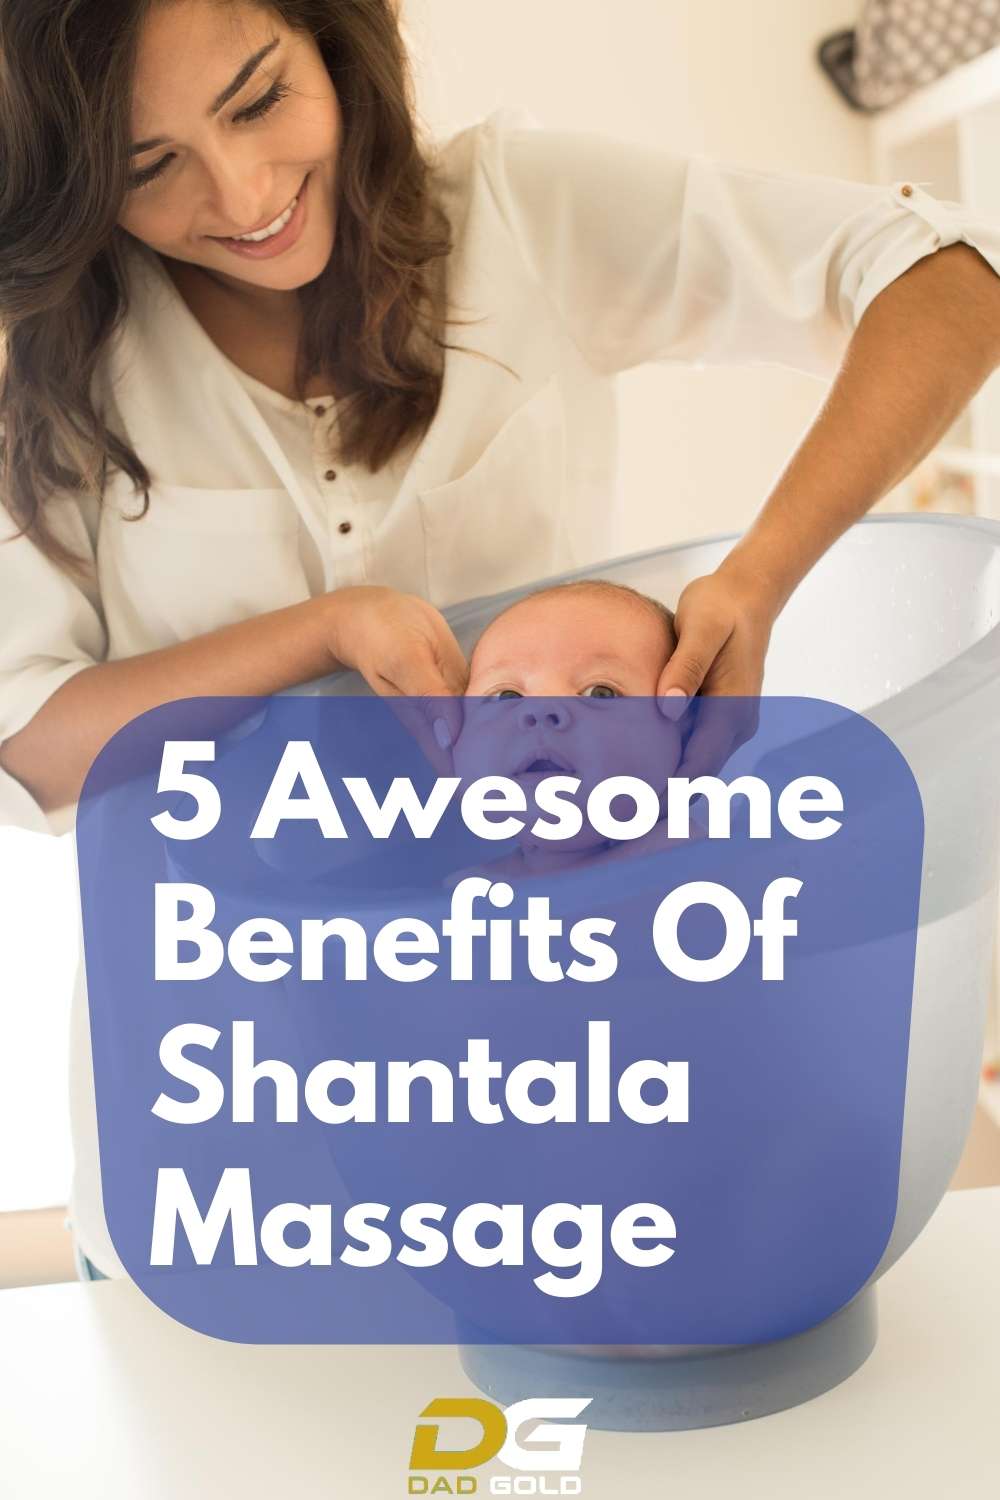 5 Awesome Benefits Of Shantala Massage